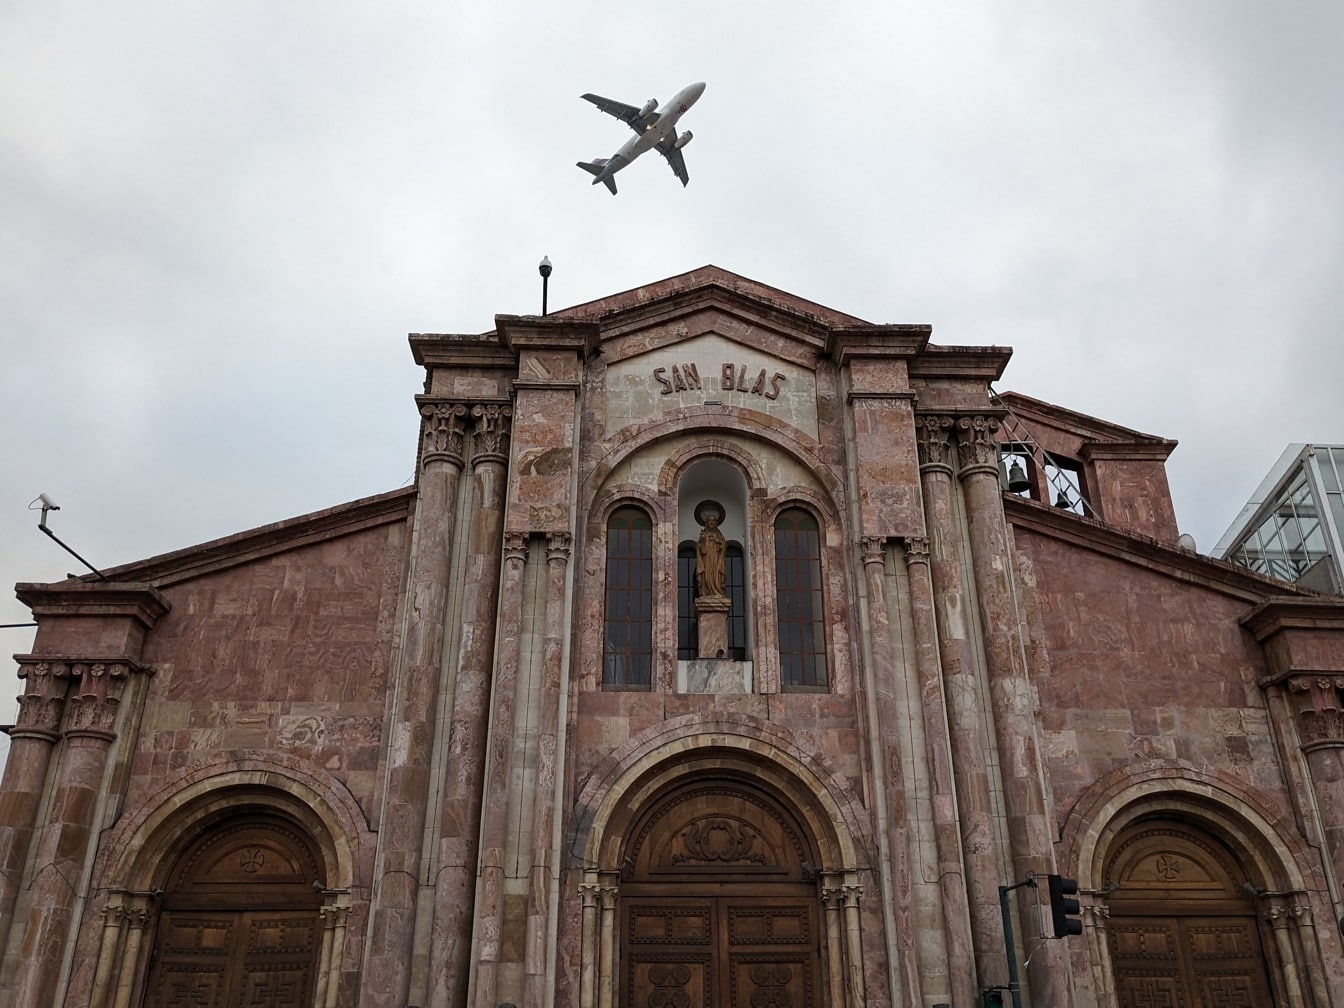 Letadlo letící nad katolickým kostelem San Blas ve městě Cuenca v Ekvádoru